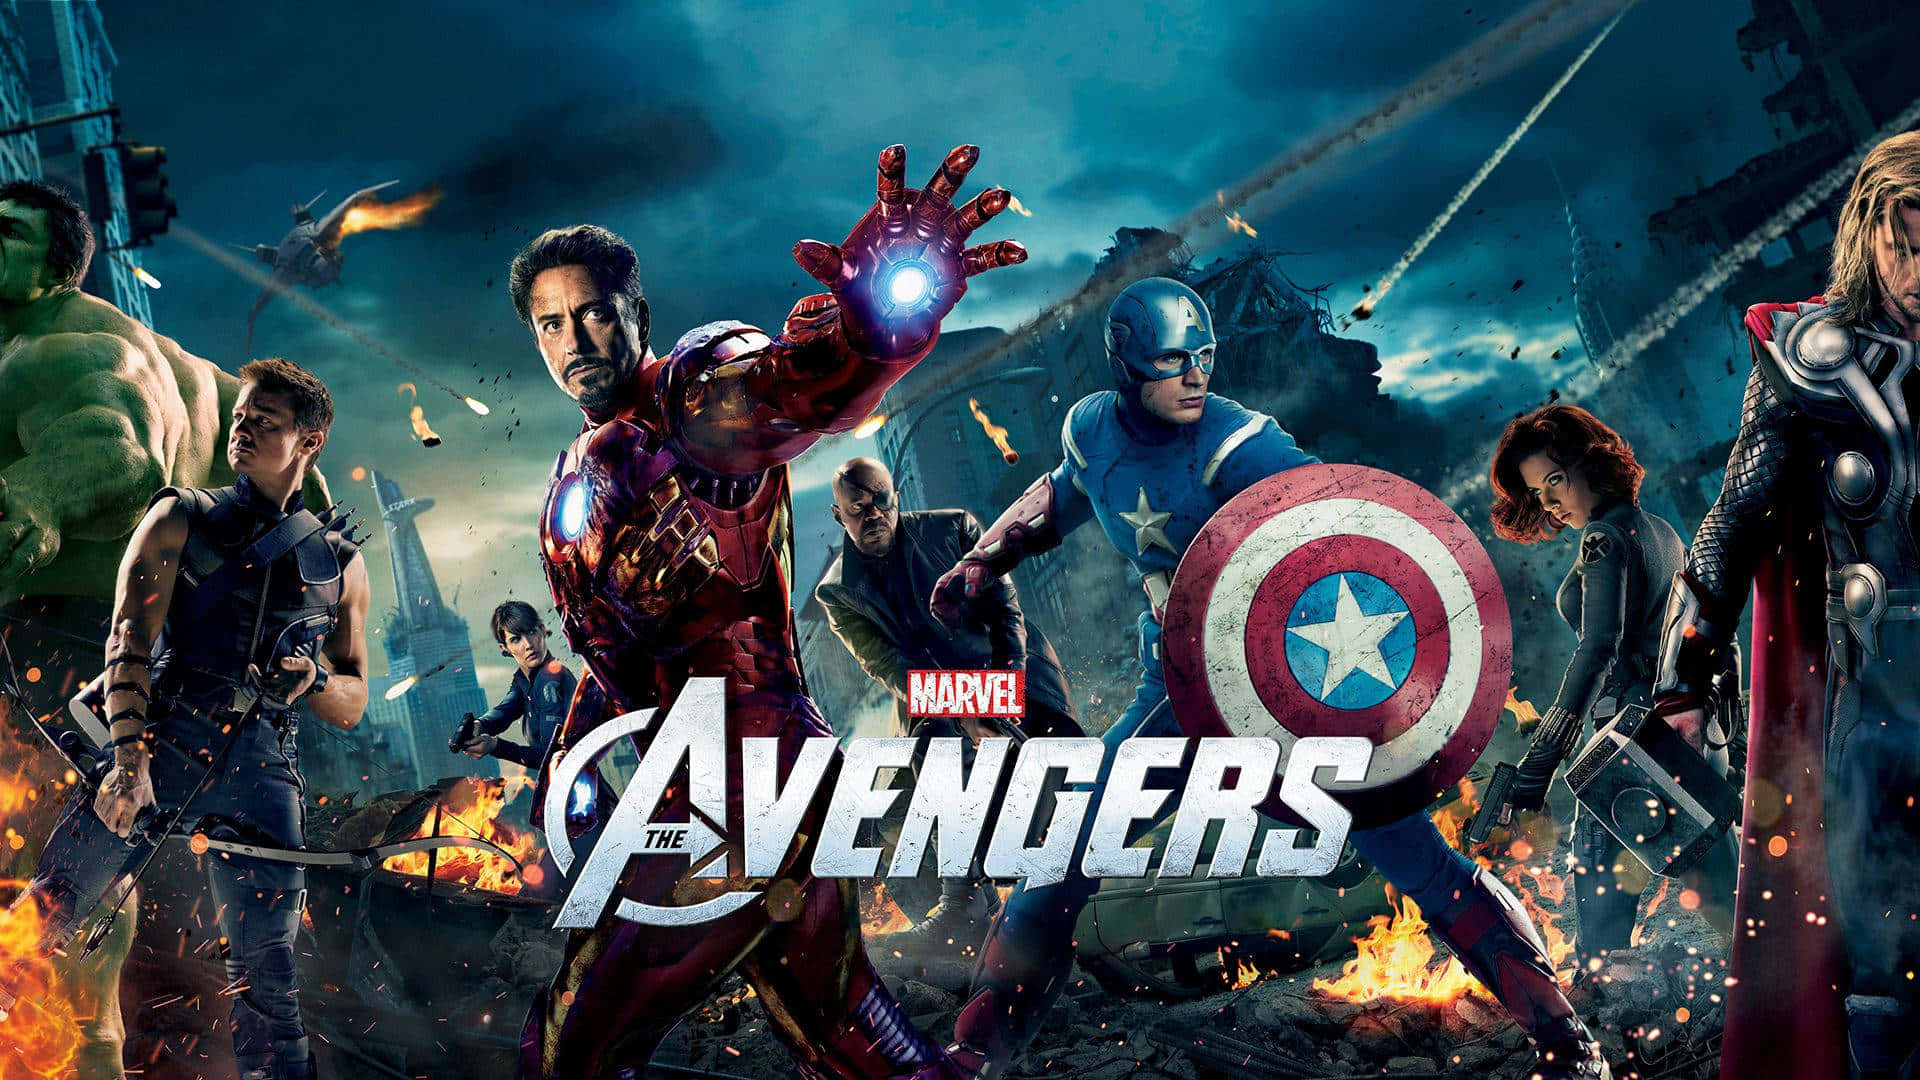 The New Avengers Team Up For Battle Wallpaper